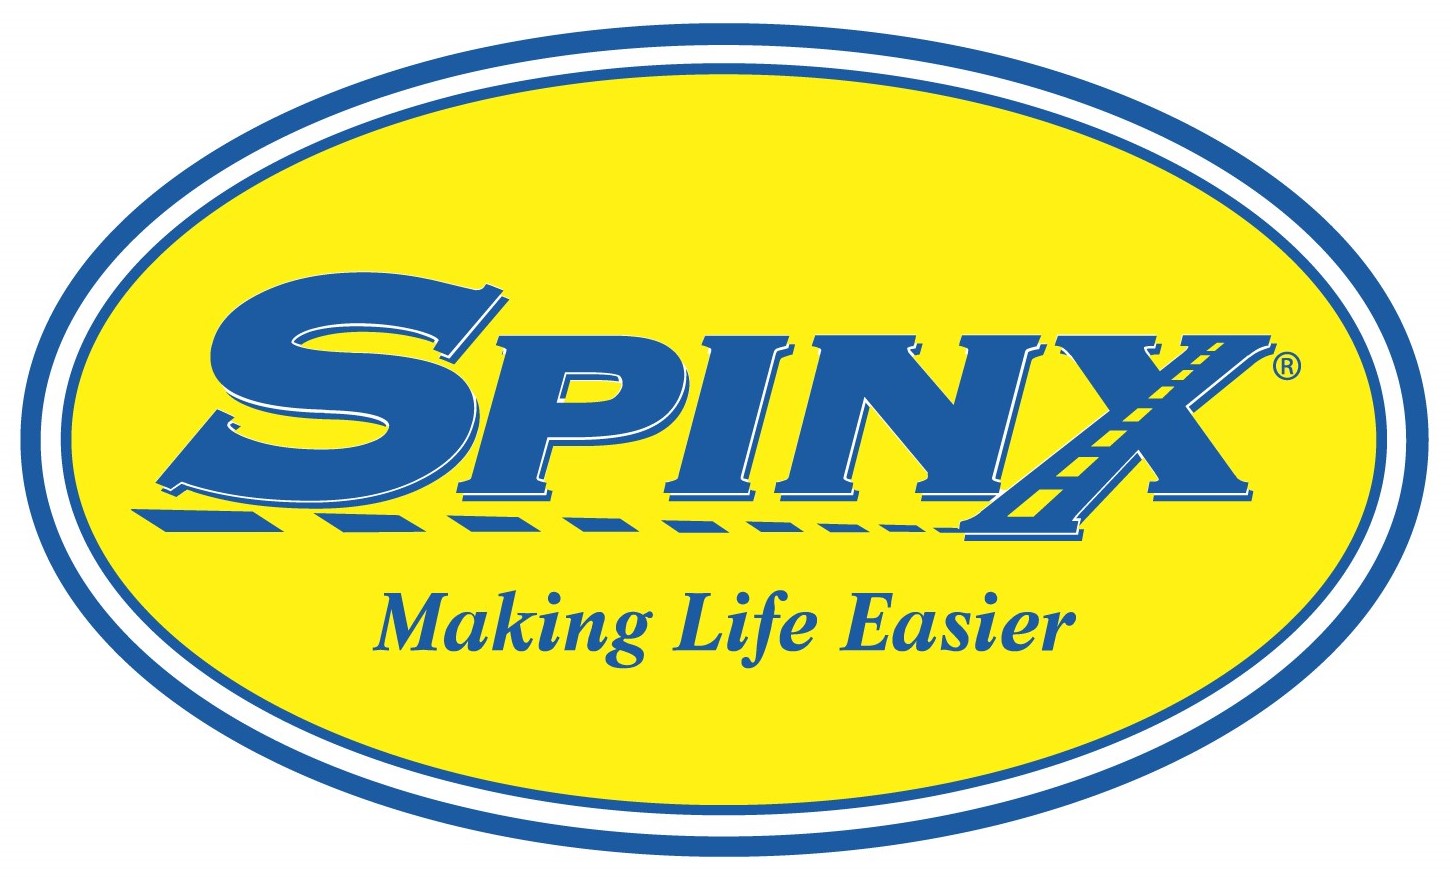 Spinx logo